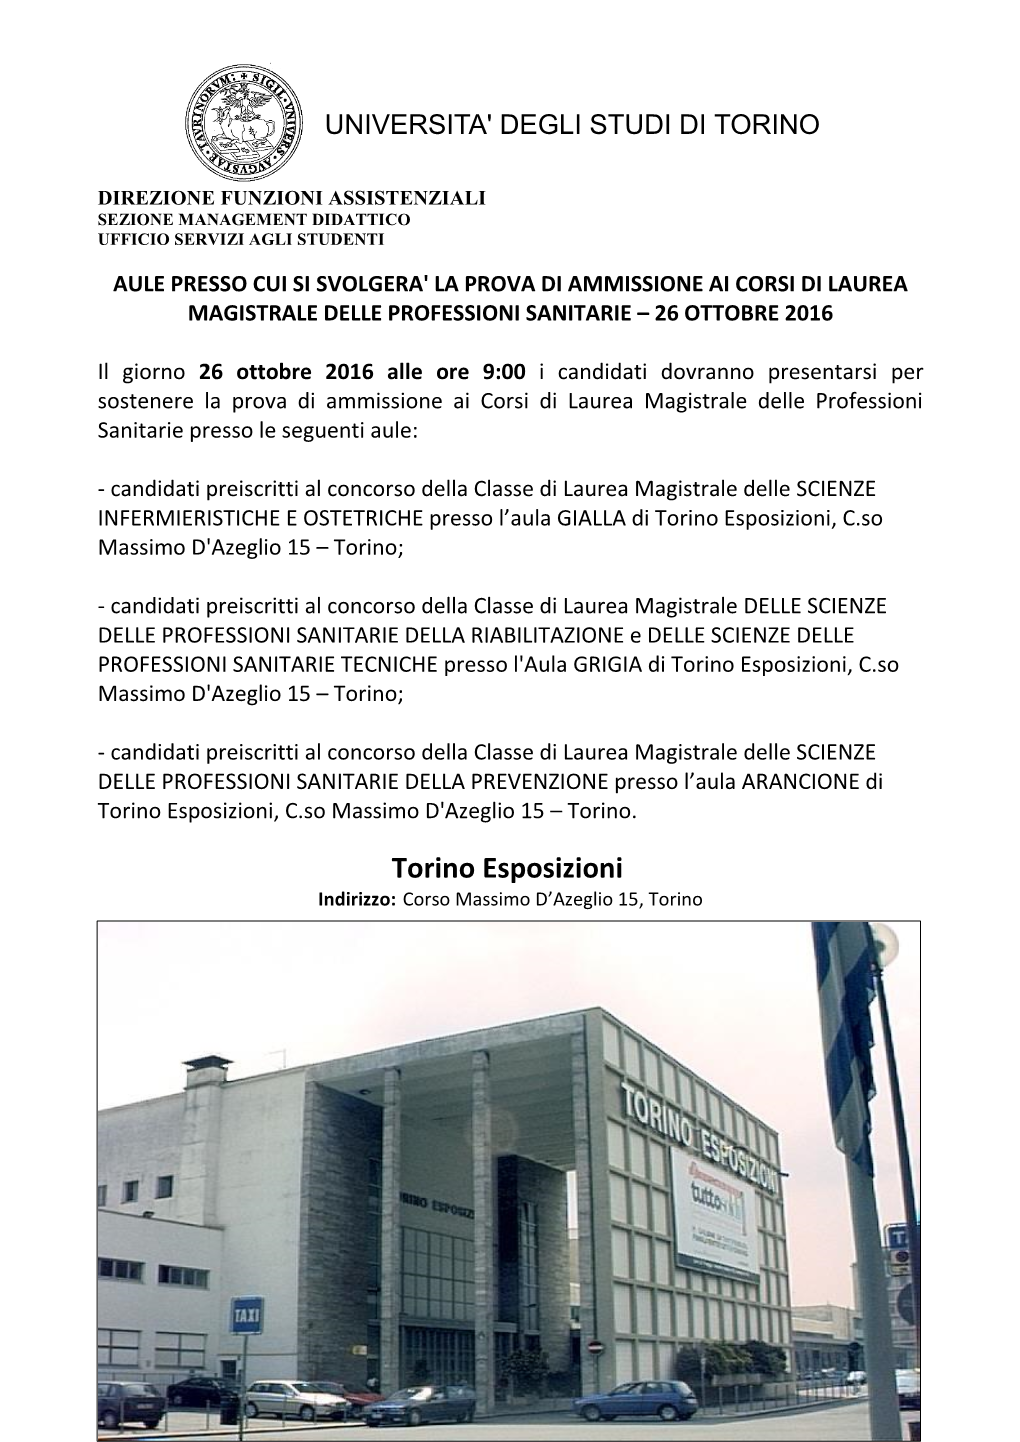 Torino Esposizioni, C.So Massimo D'azeglio 15 – Torino;